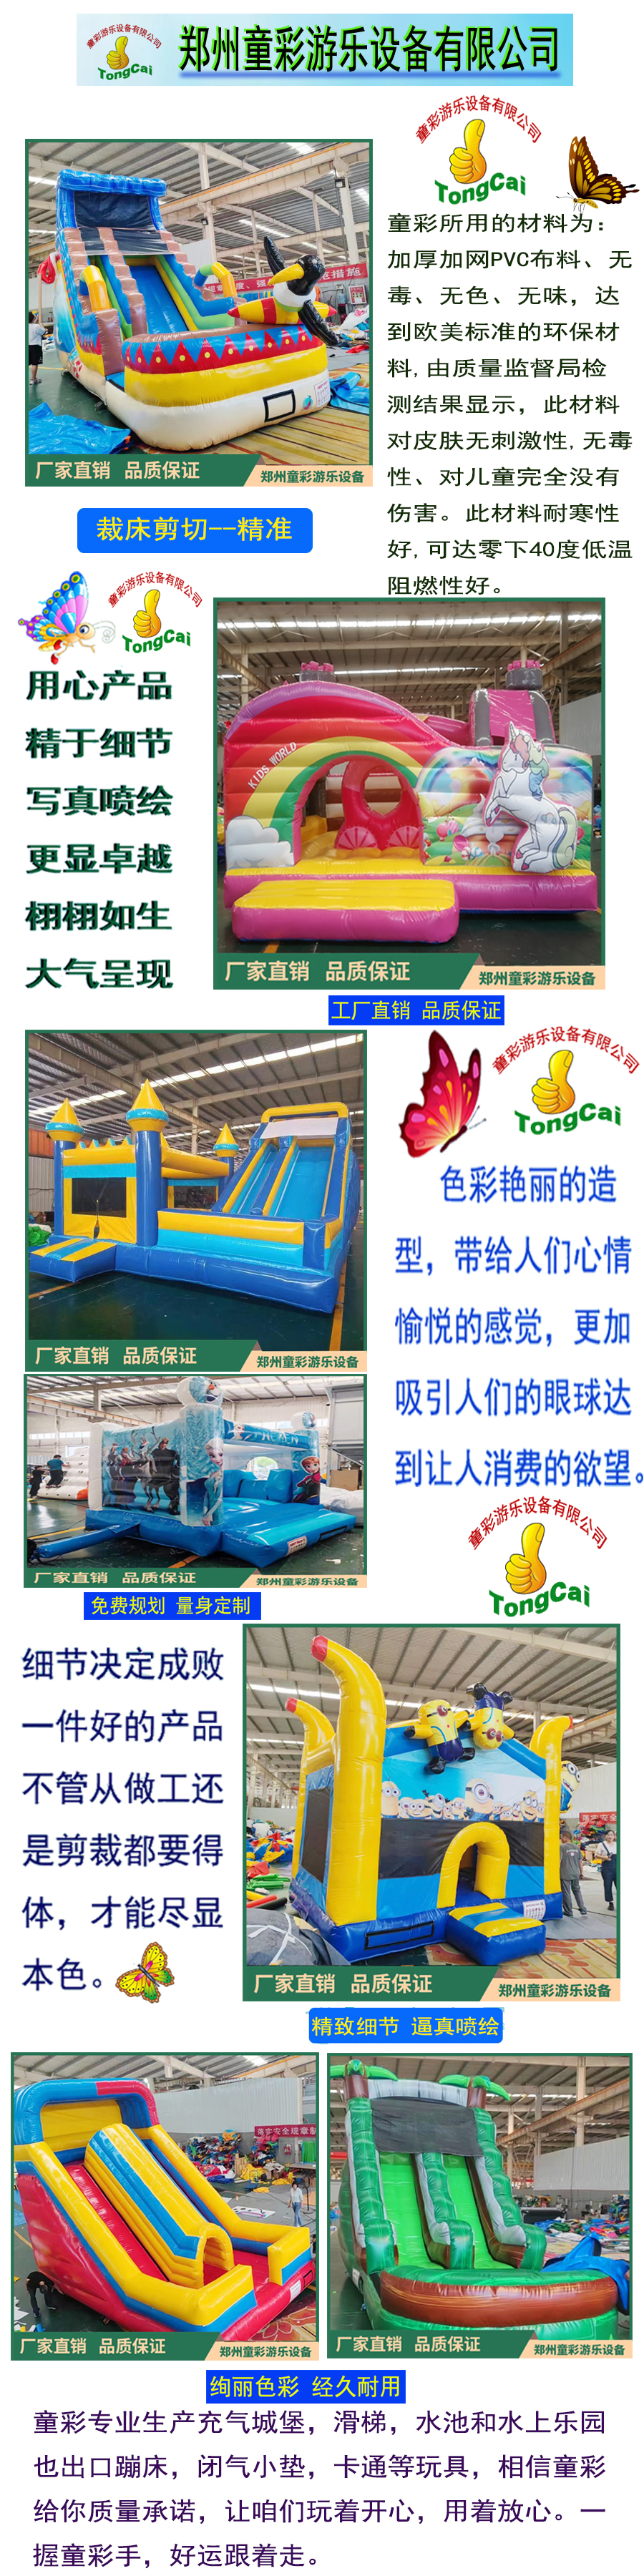 Indoor and outdoor mischievous castle children's inflatable model jump bed children's playground amusement equipment inflatable castle trampoline